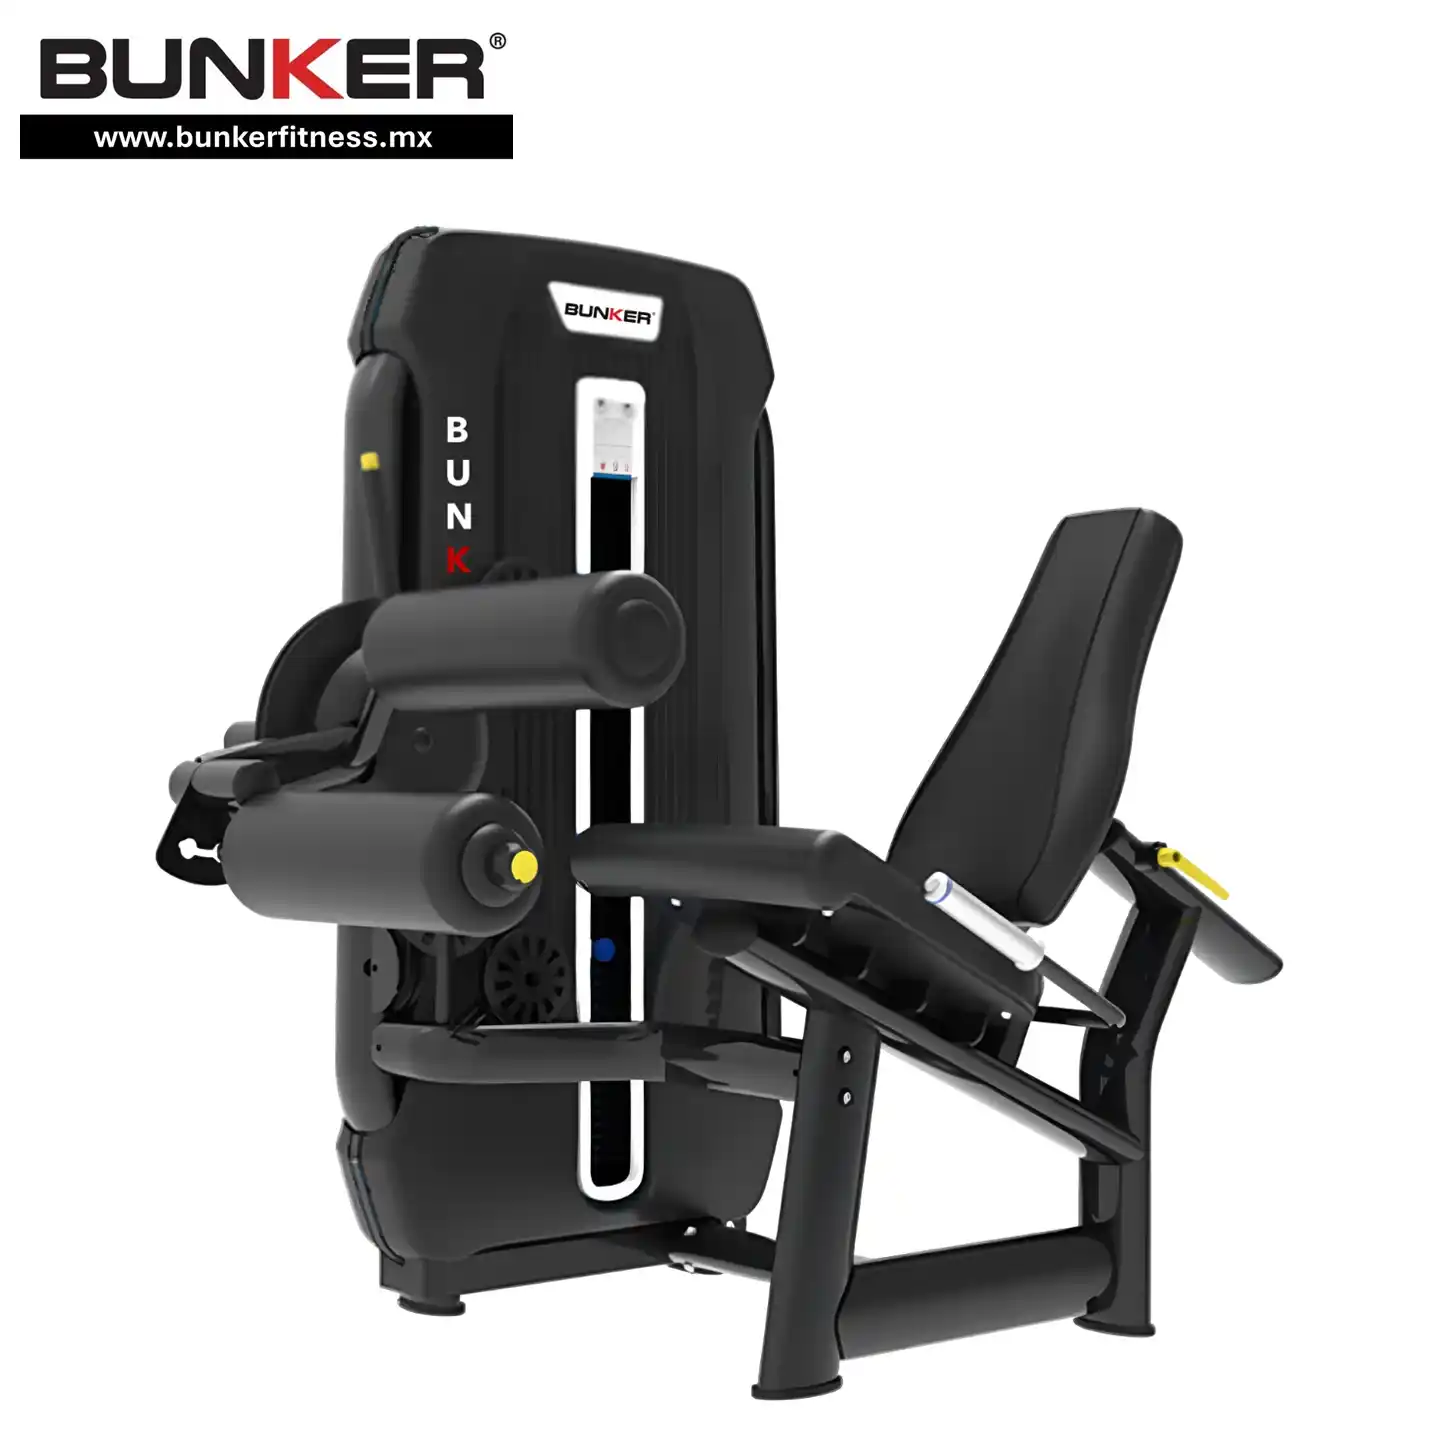 curl y extensión de piernas sentado bunker fitness para ejercicio en gym y gimnasio en casa bunker gym bunker fitness